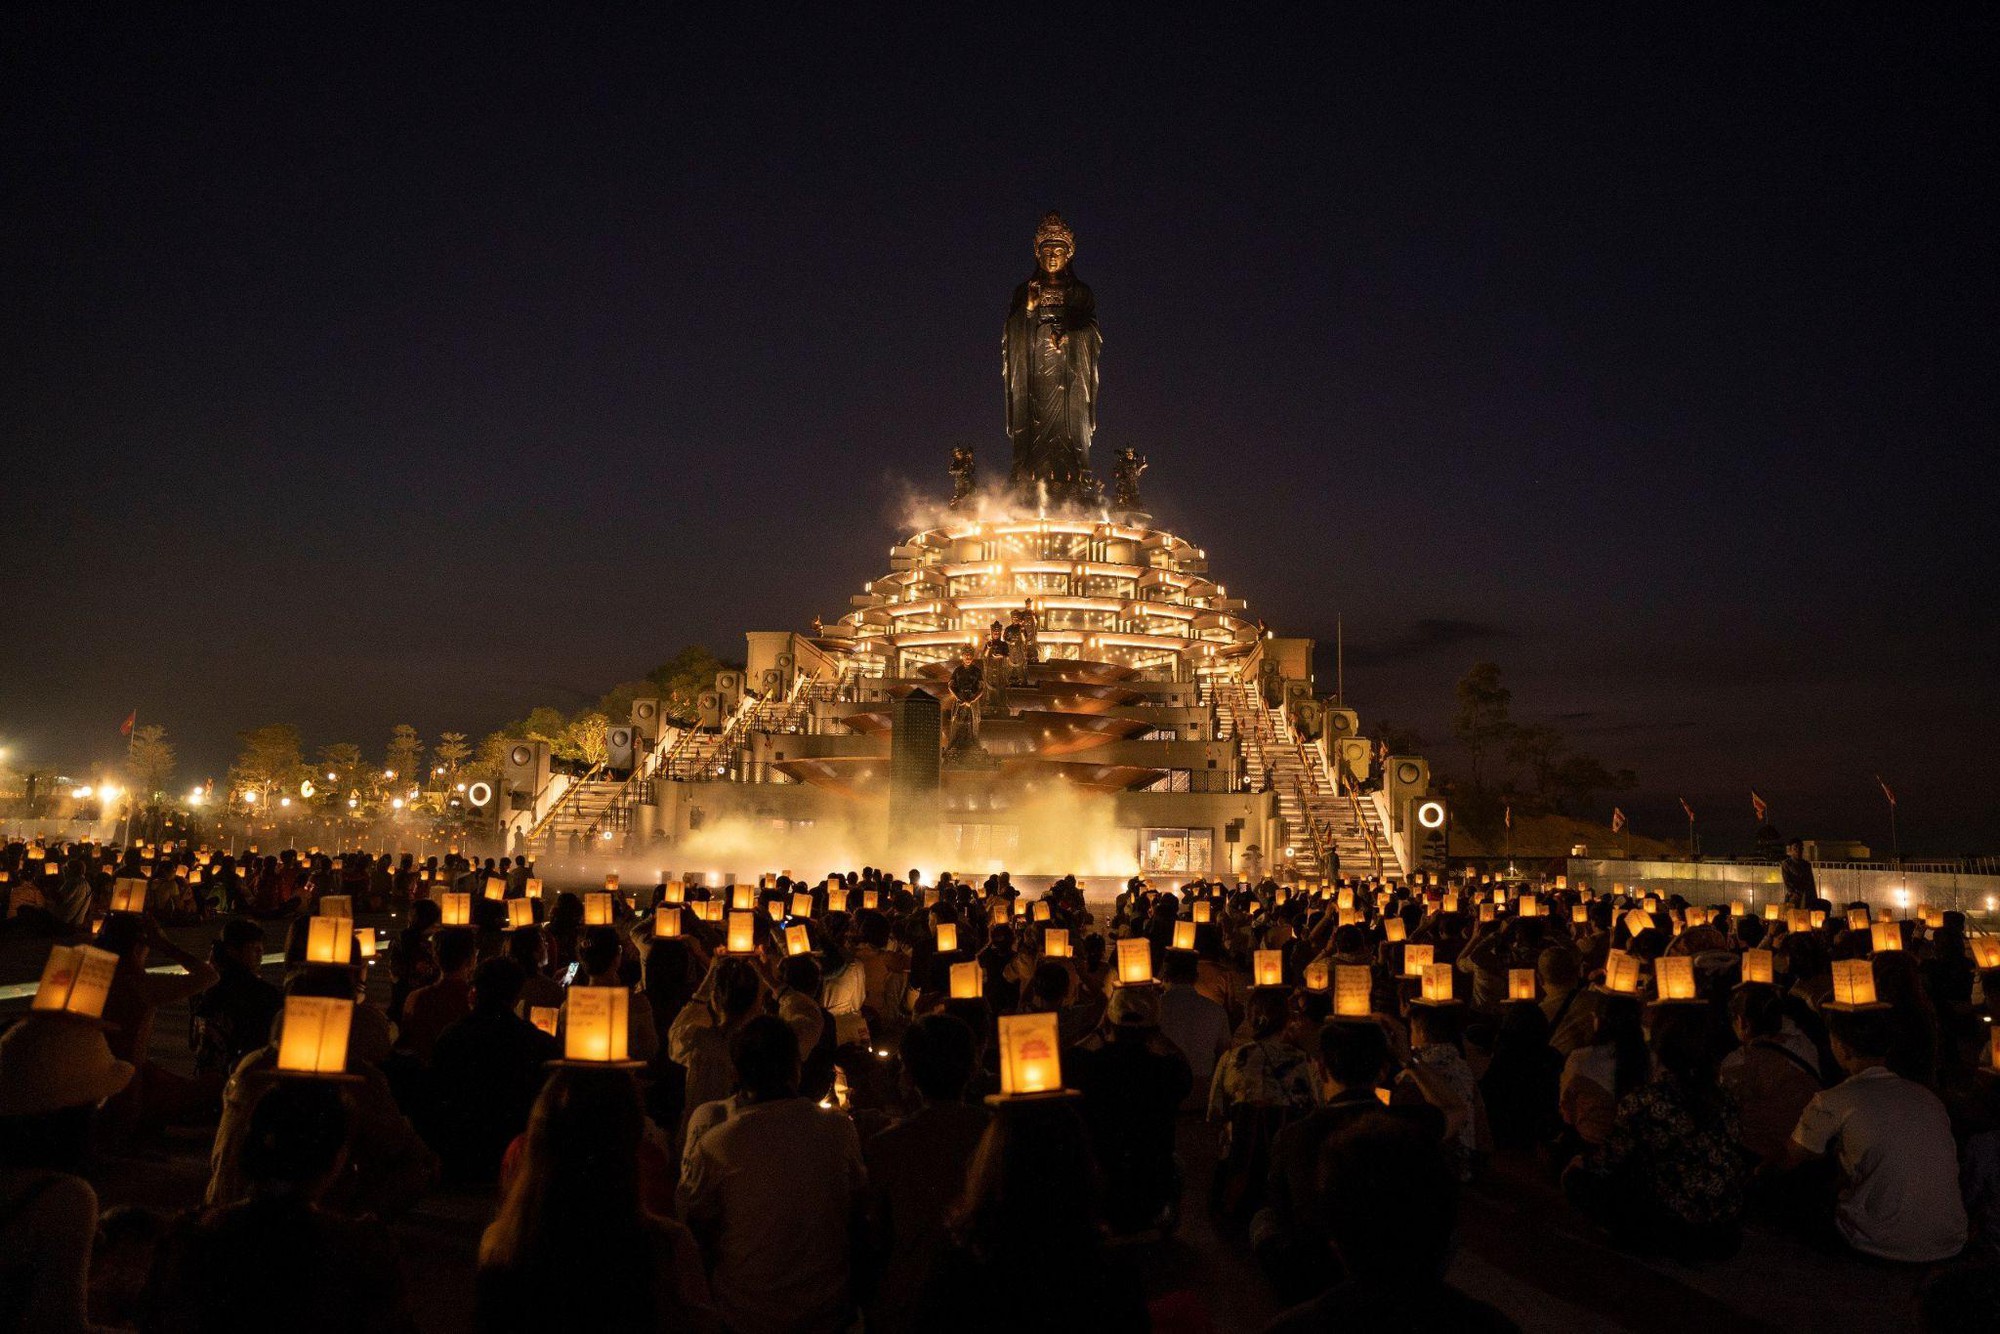 Núi Bà Đen, Tây Ninh tổ chức dâng đăng Thứ 7 hàng tuần trong mùa lễ tạ cuối năm - Ảnh 3.